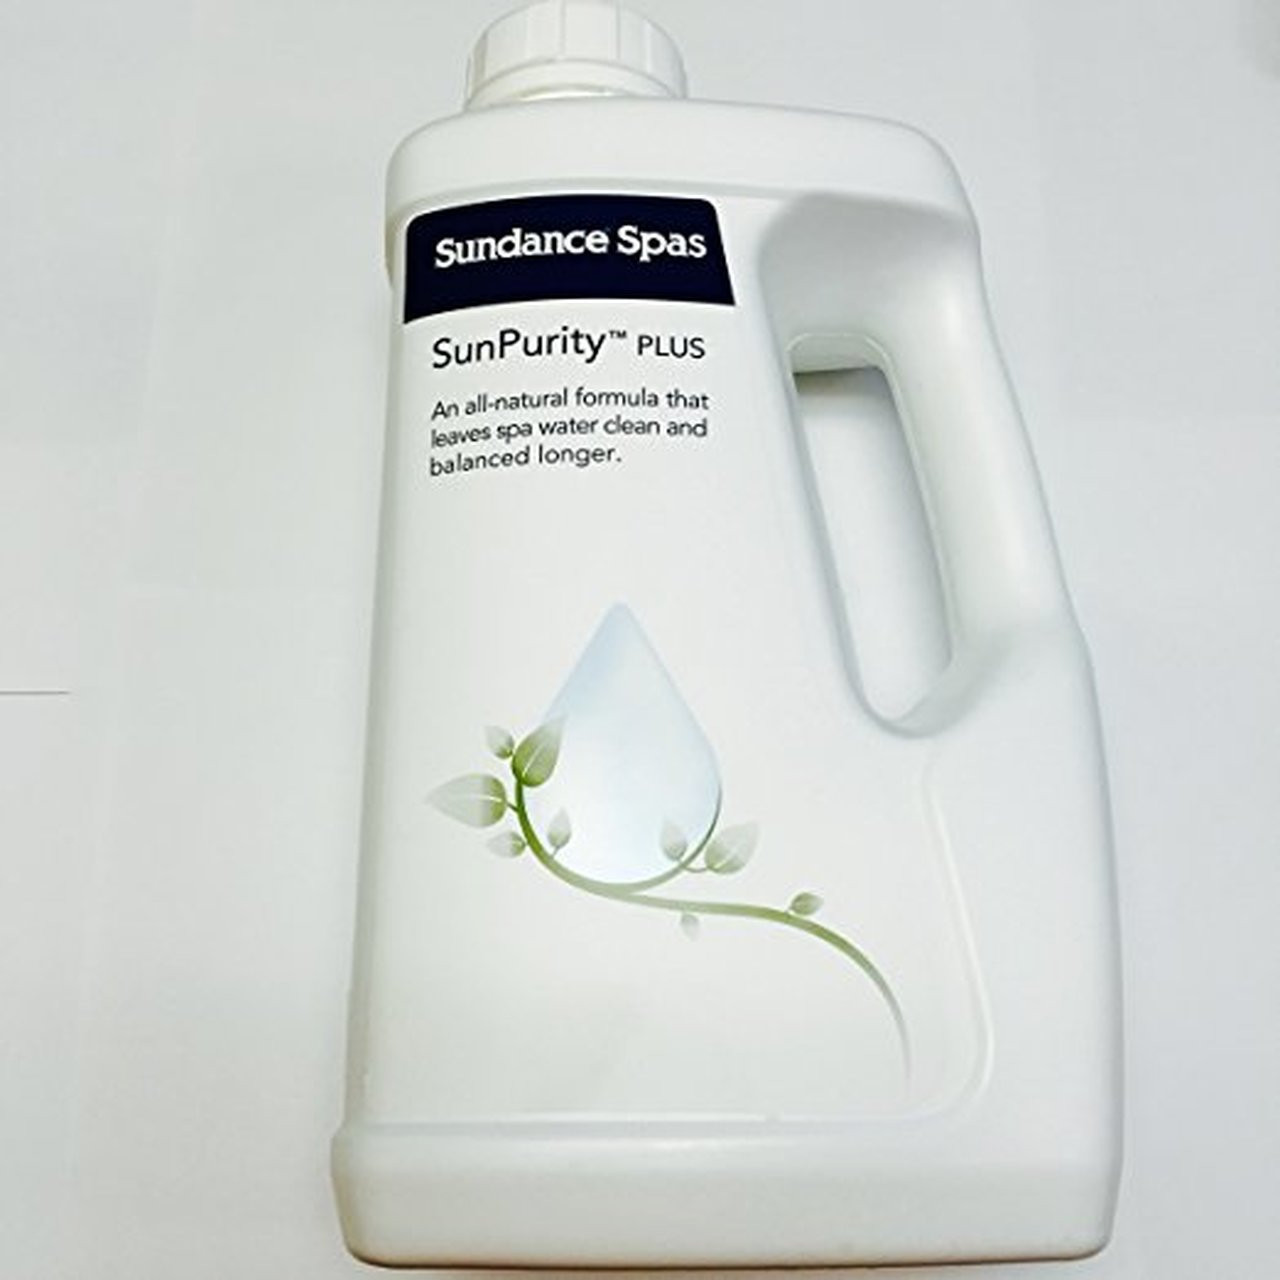 SunPurity Generic Mineral Sanitizer Purifier Cartridge for Sundance Spas Sun